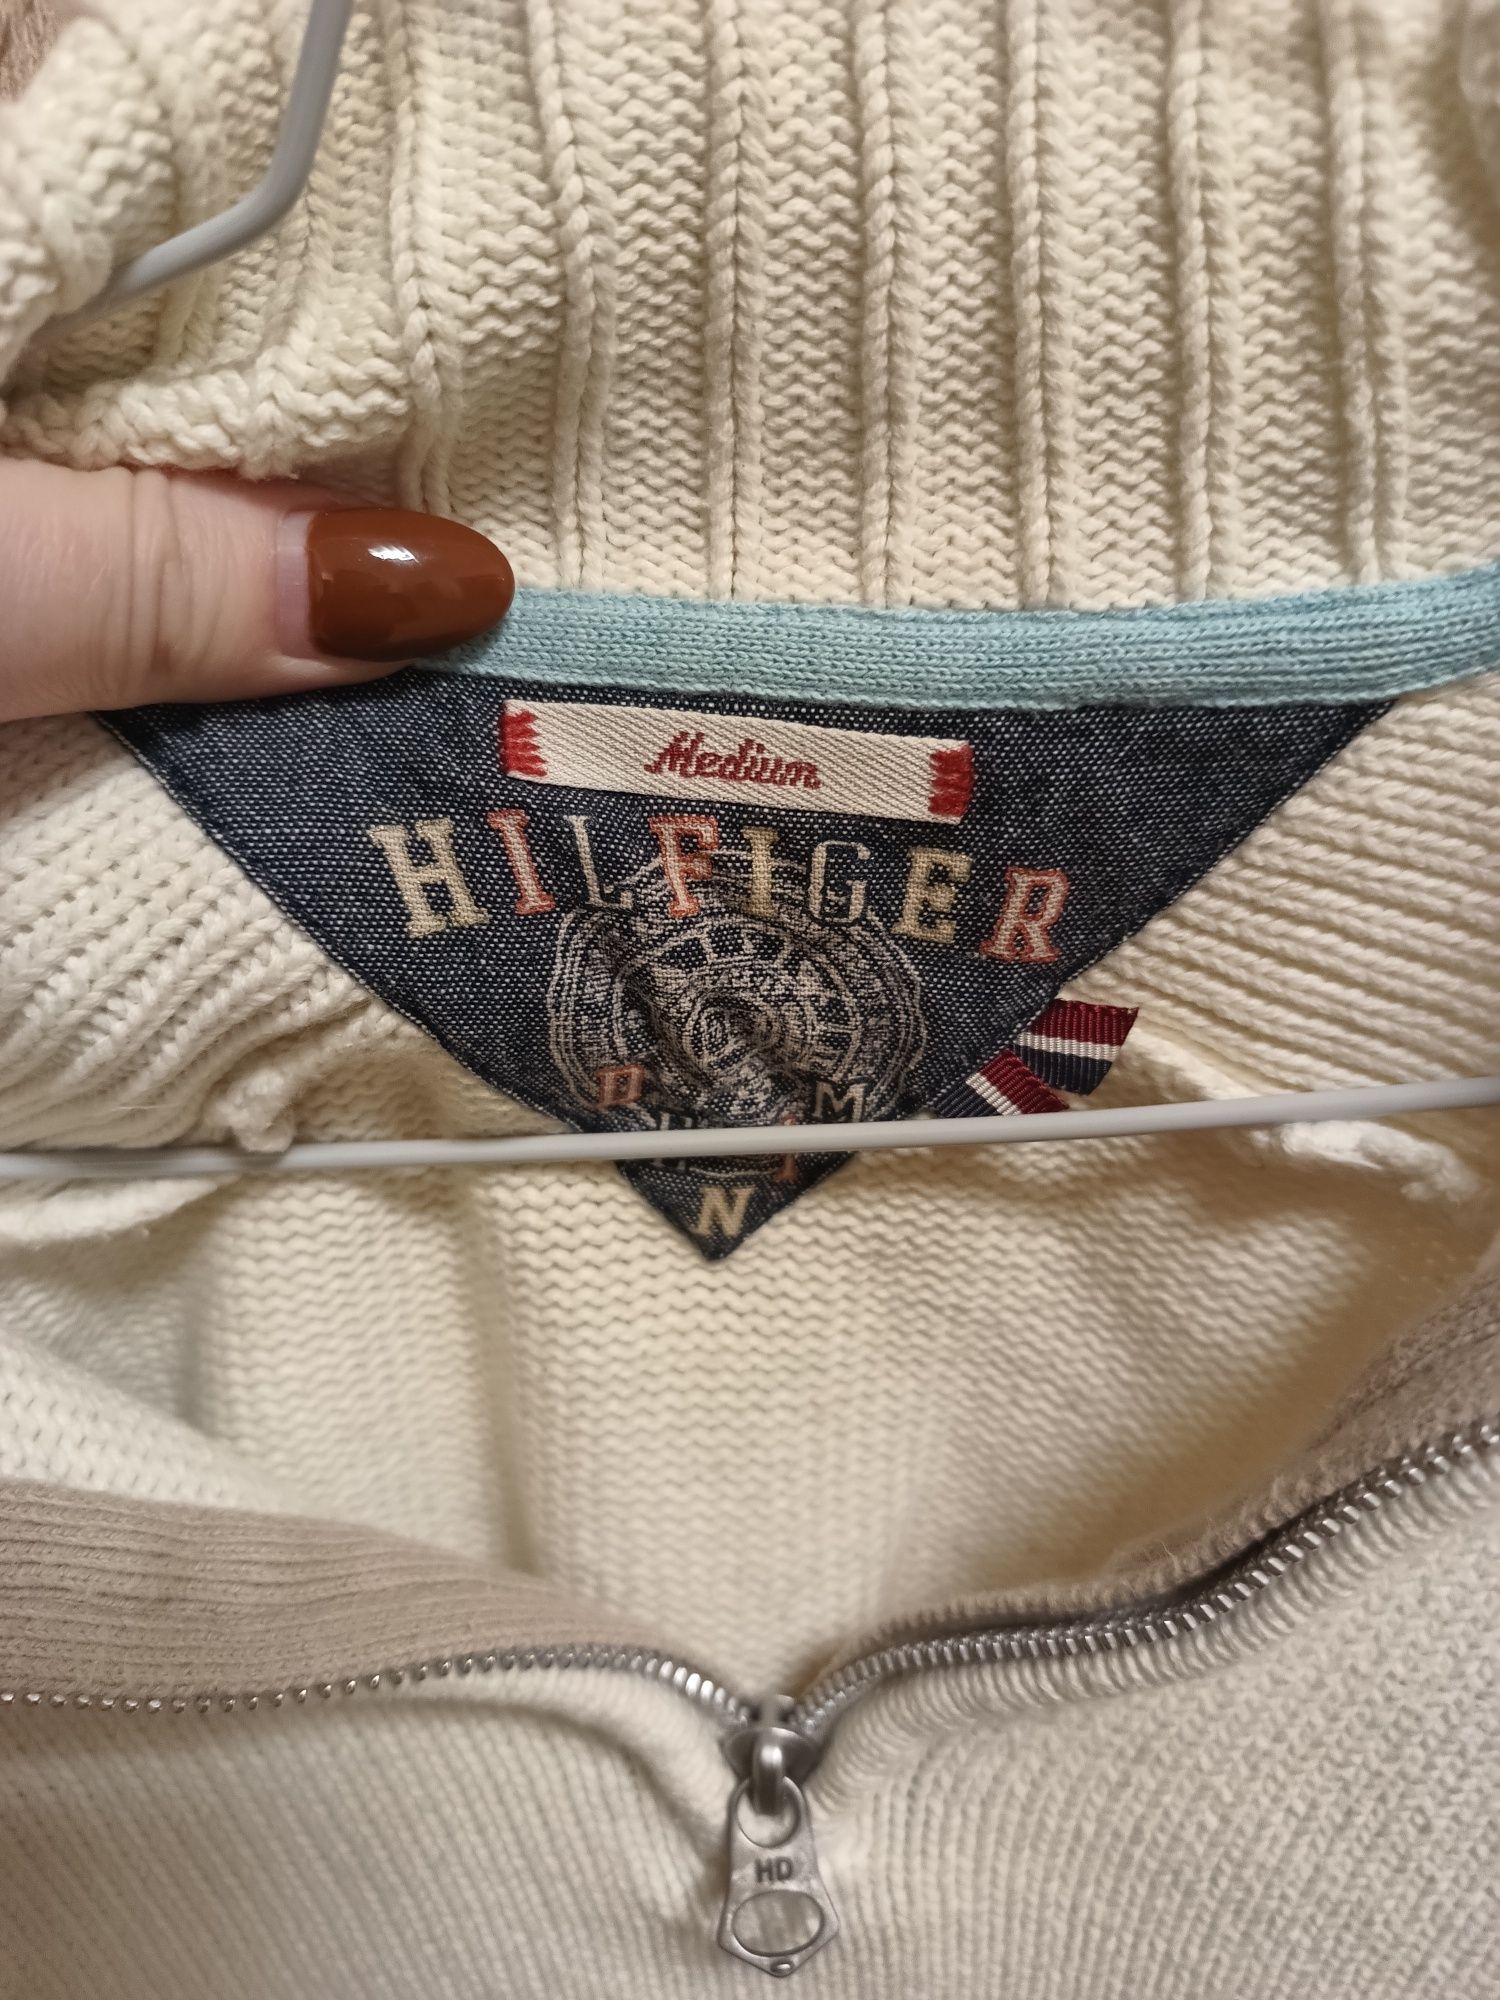 Męski sweter ze stójką marki Hilfiger Denim w rozmiarze M